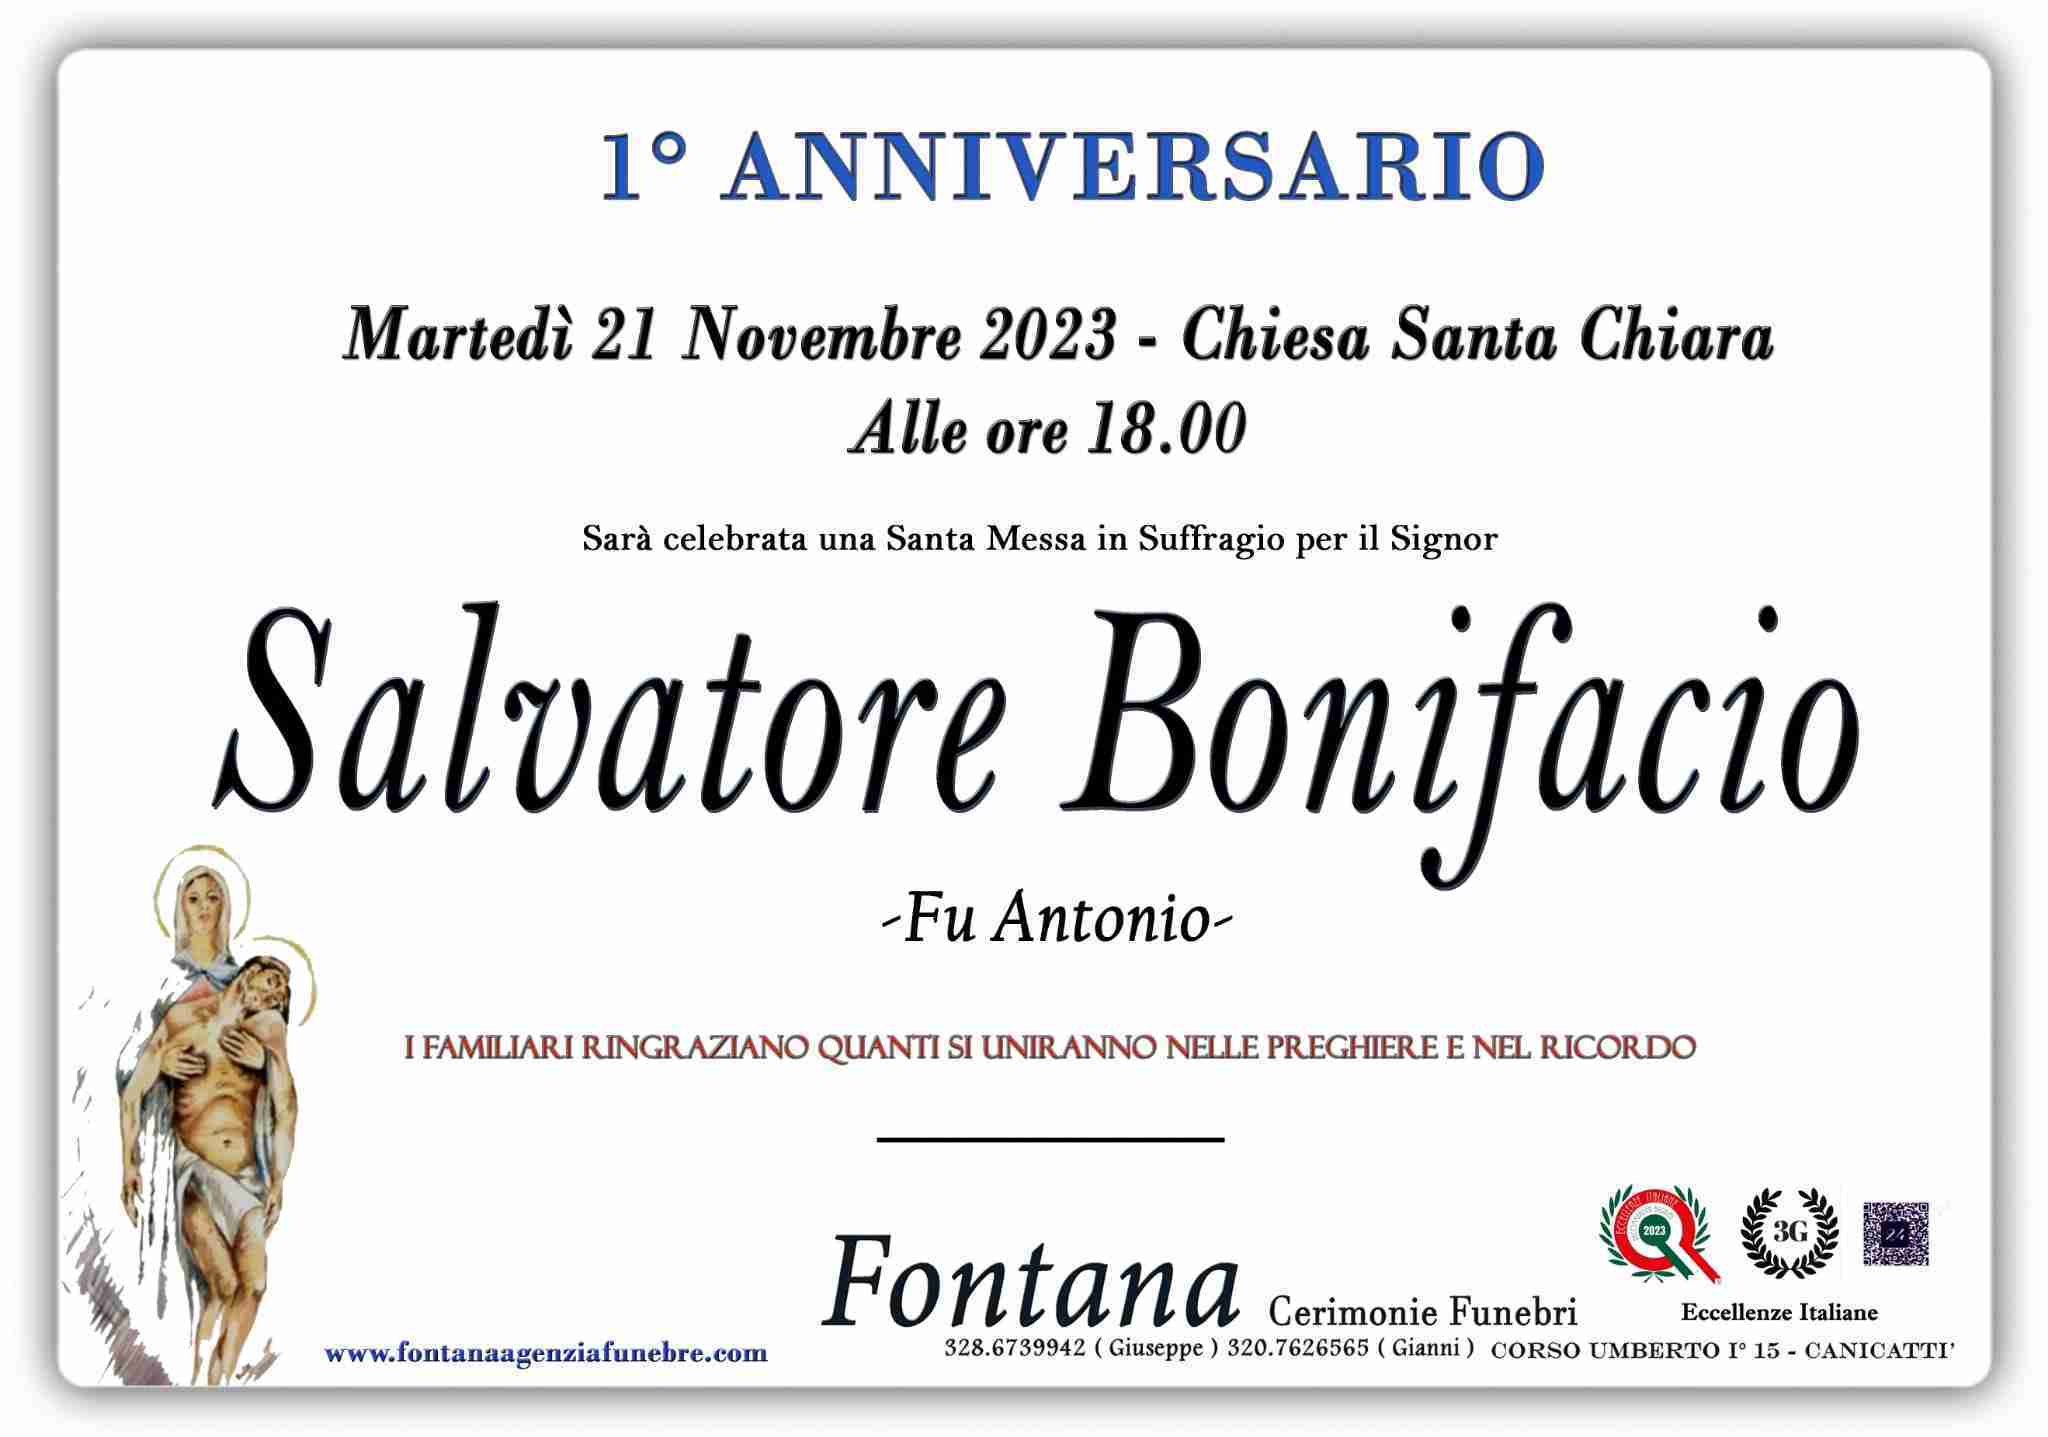 Bonifacio Salvatore